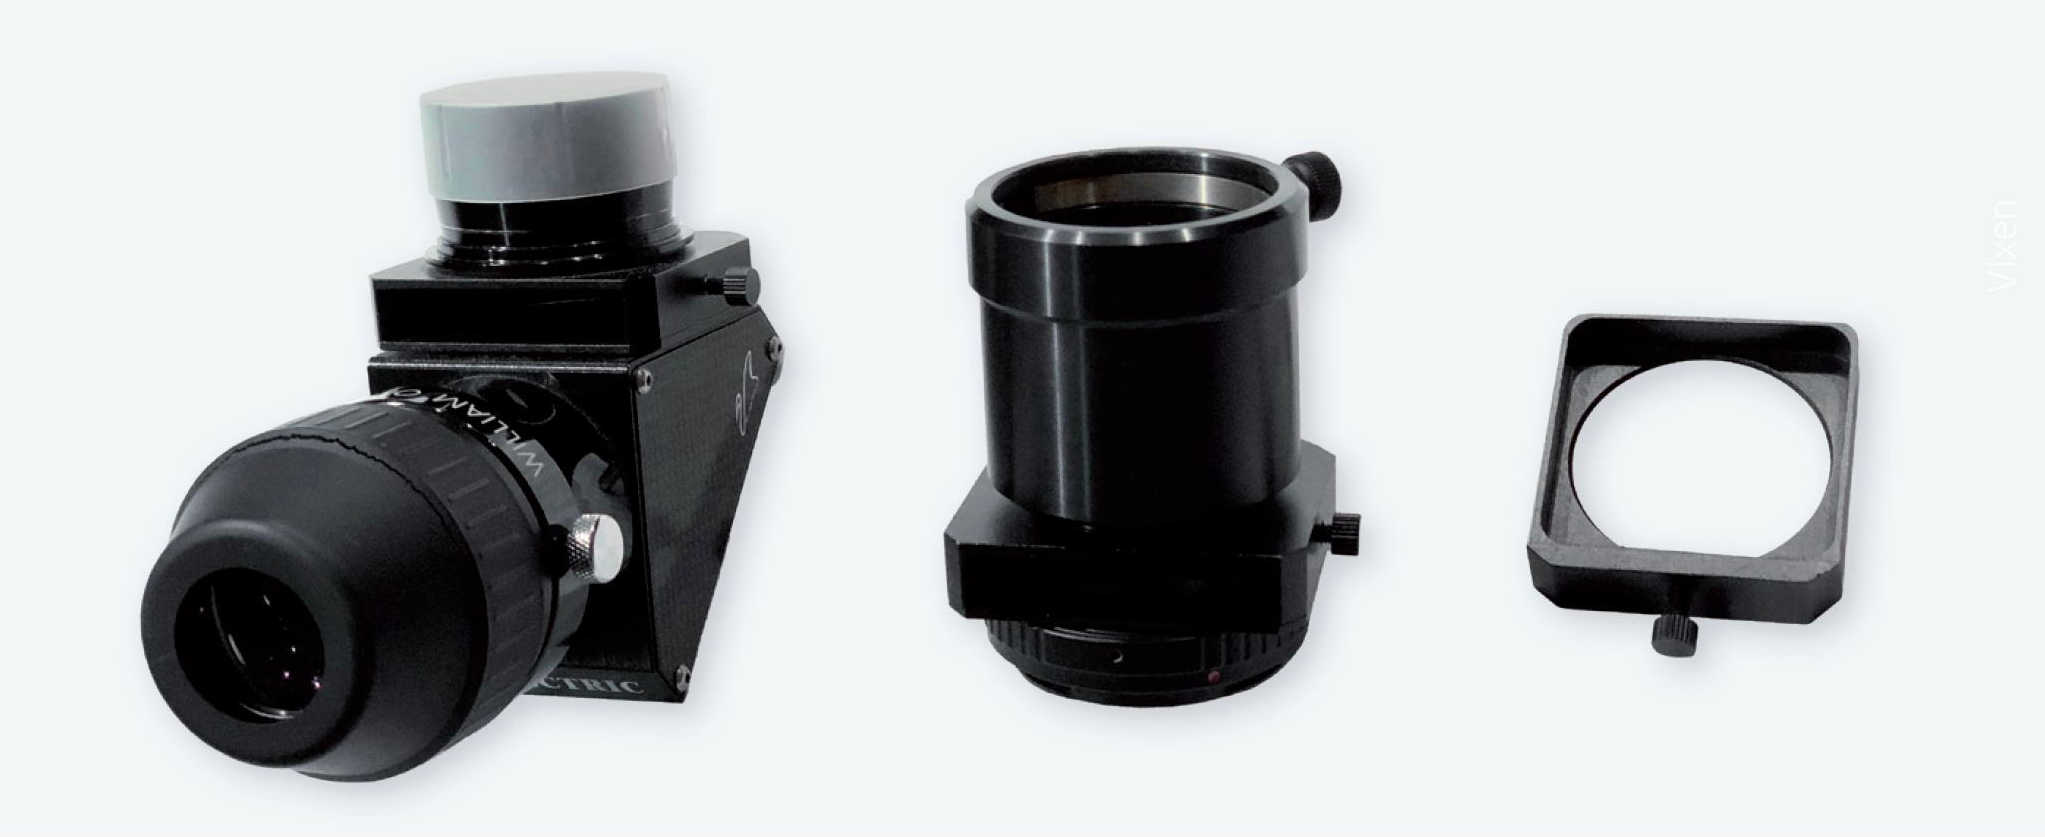 Tiroirs à filtres montés sur un renvoi coudé et un adaptateur Canon EOS (les roues moletées servent à bloquer le tiroir), et tiroir à filtres à proprement parler (ici, la roue moletée sert de poignée de tiroir). P. Oden